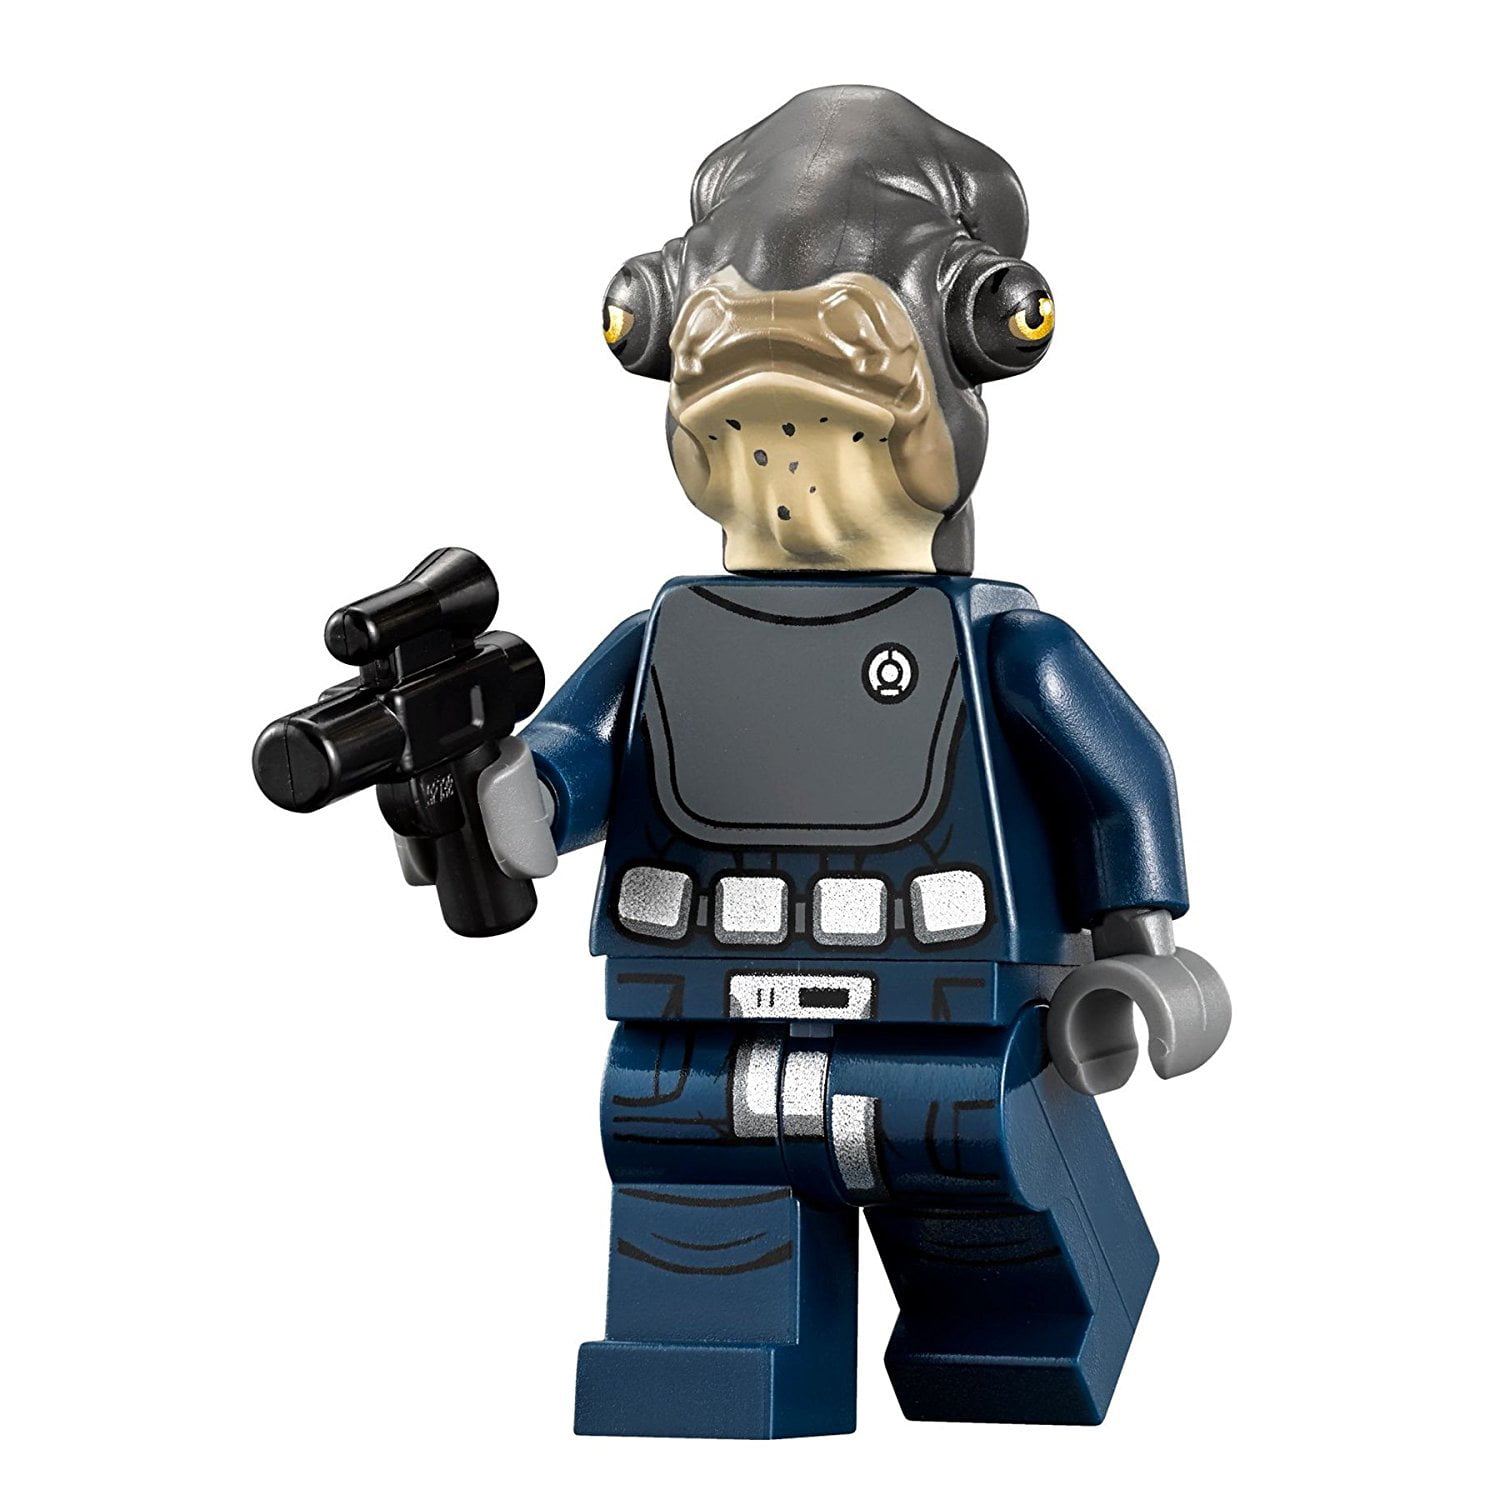 Lego Star Wars Rogue un Amiral raddus figurine from set 75172 